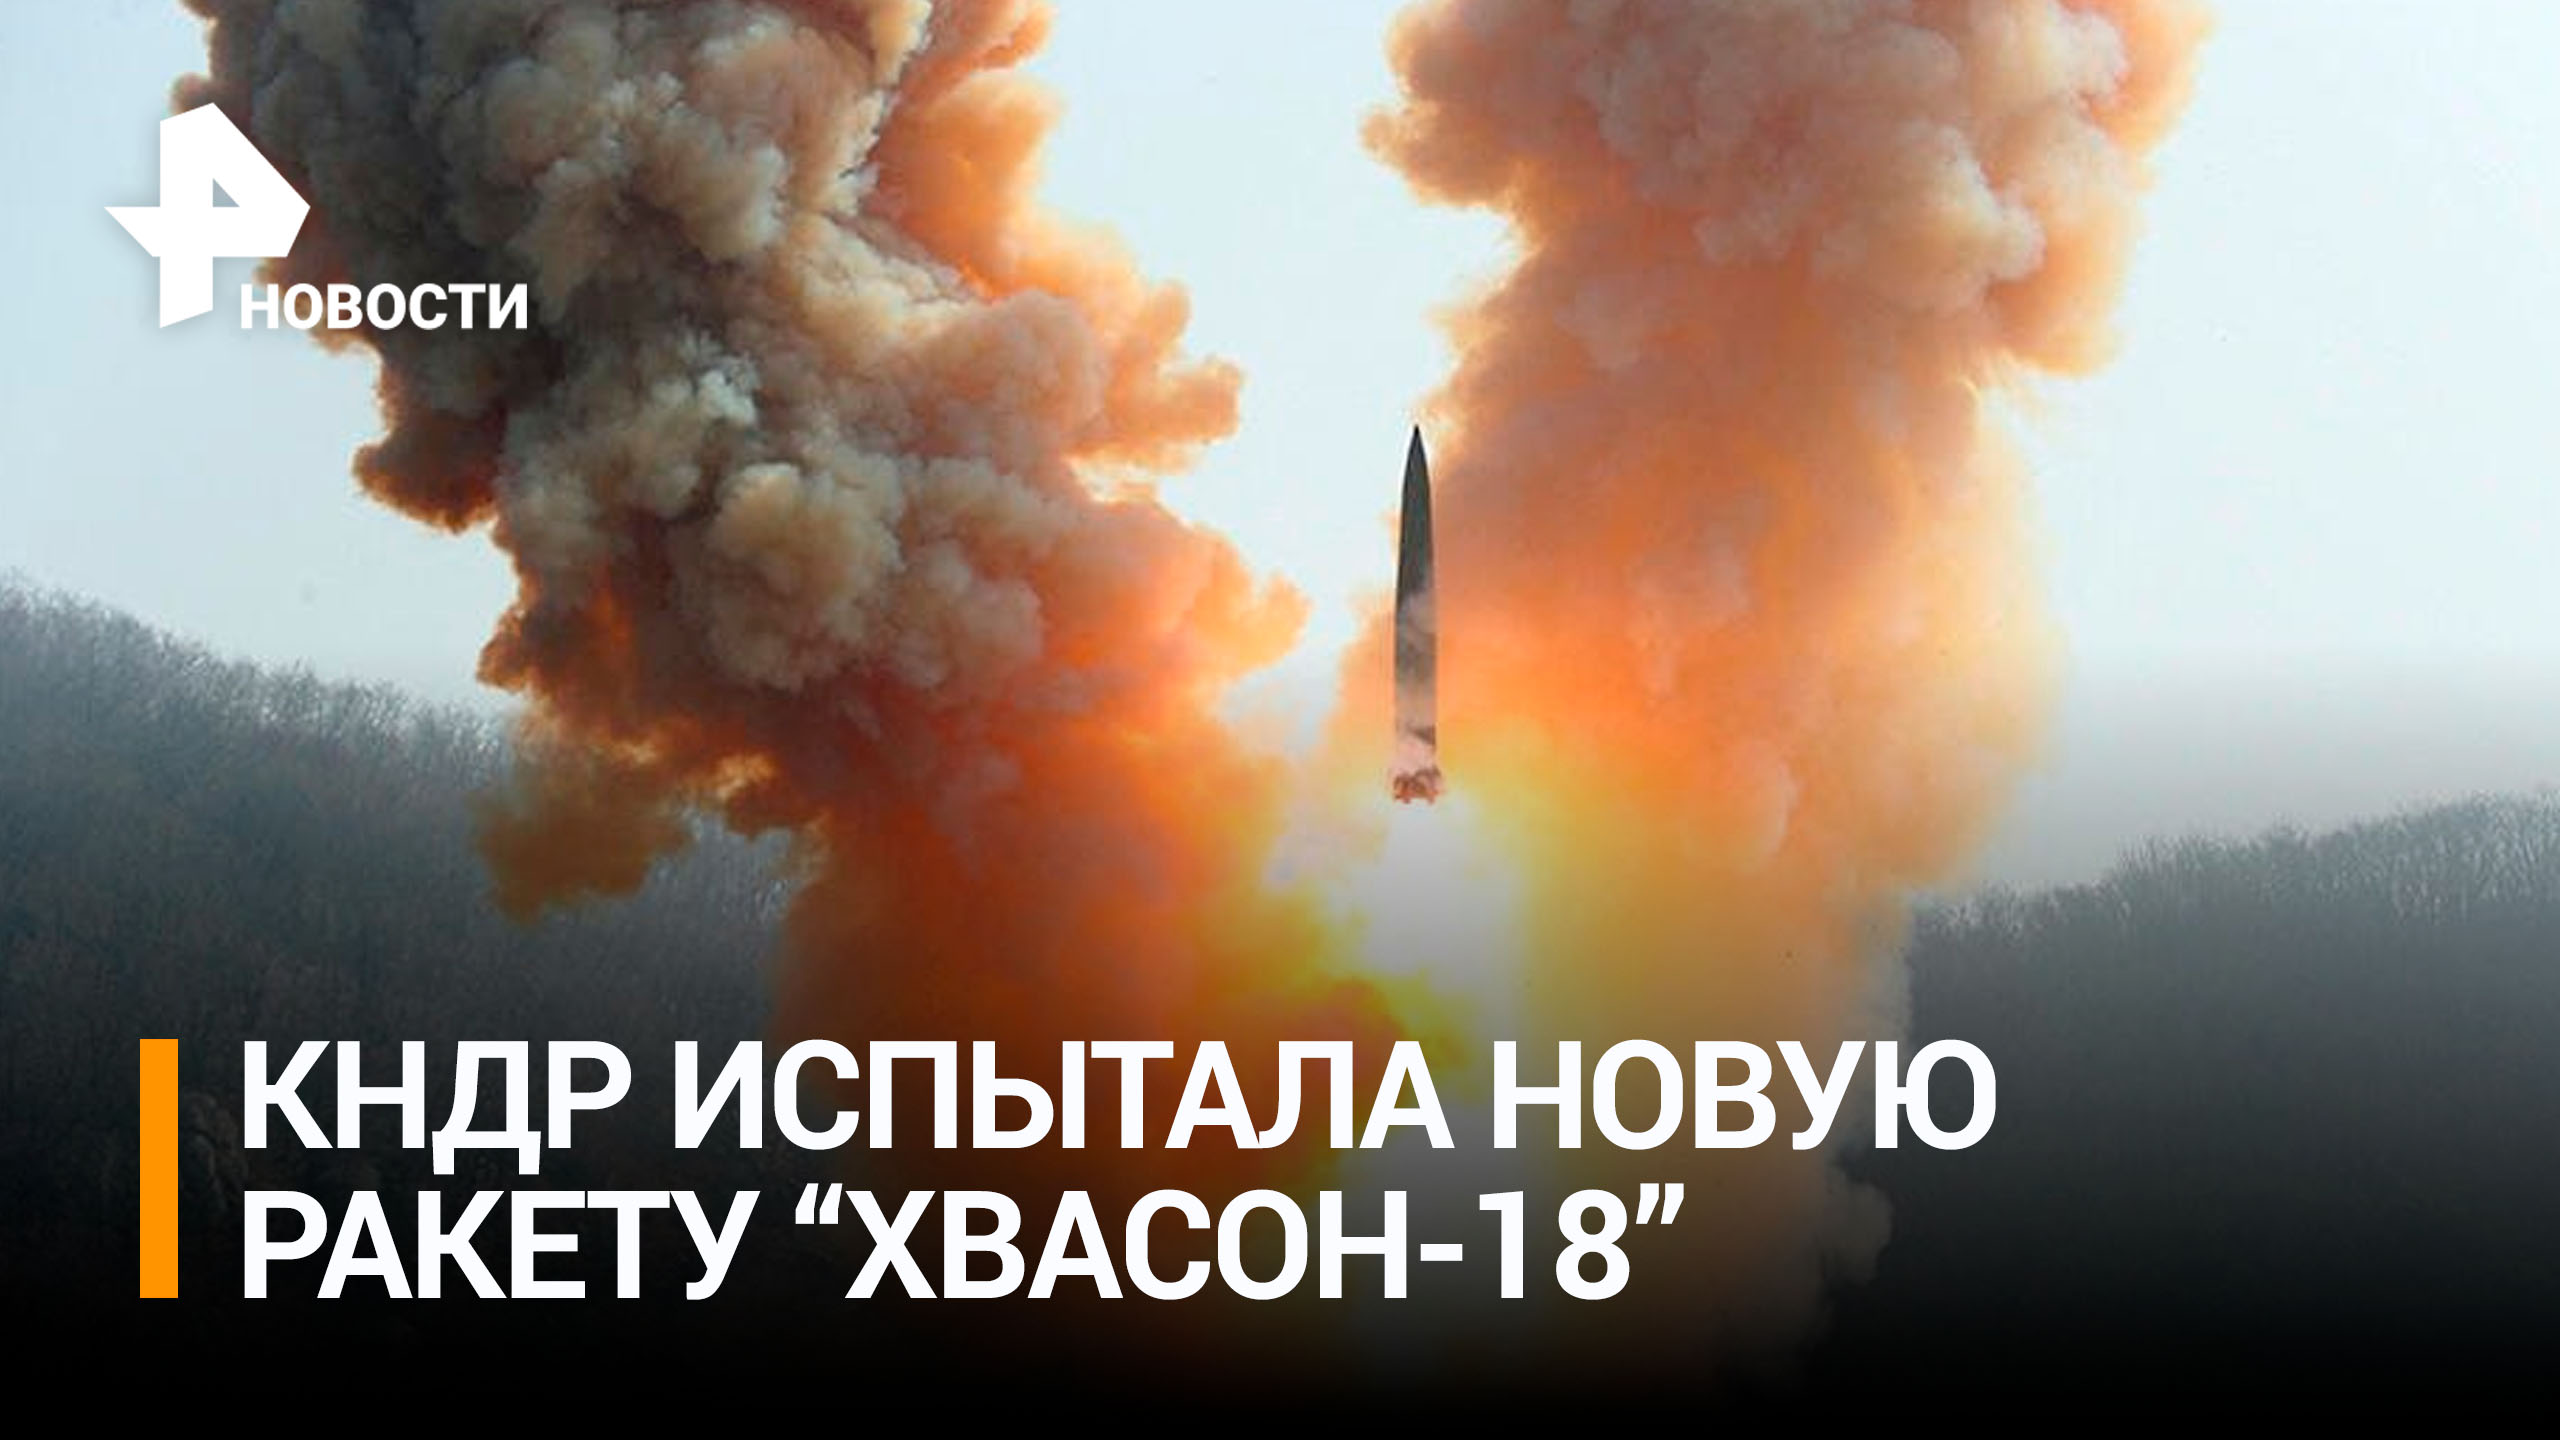 КНДР впервые испытала баллистическую ракету "Хвасон-18" / РЕН Новости